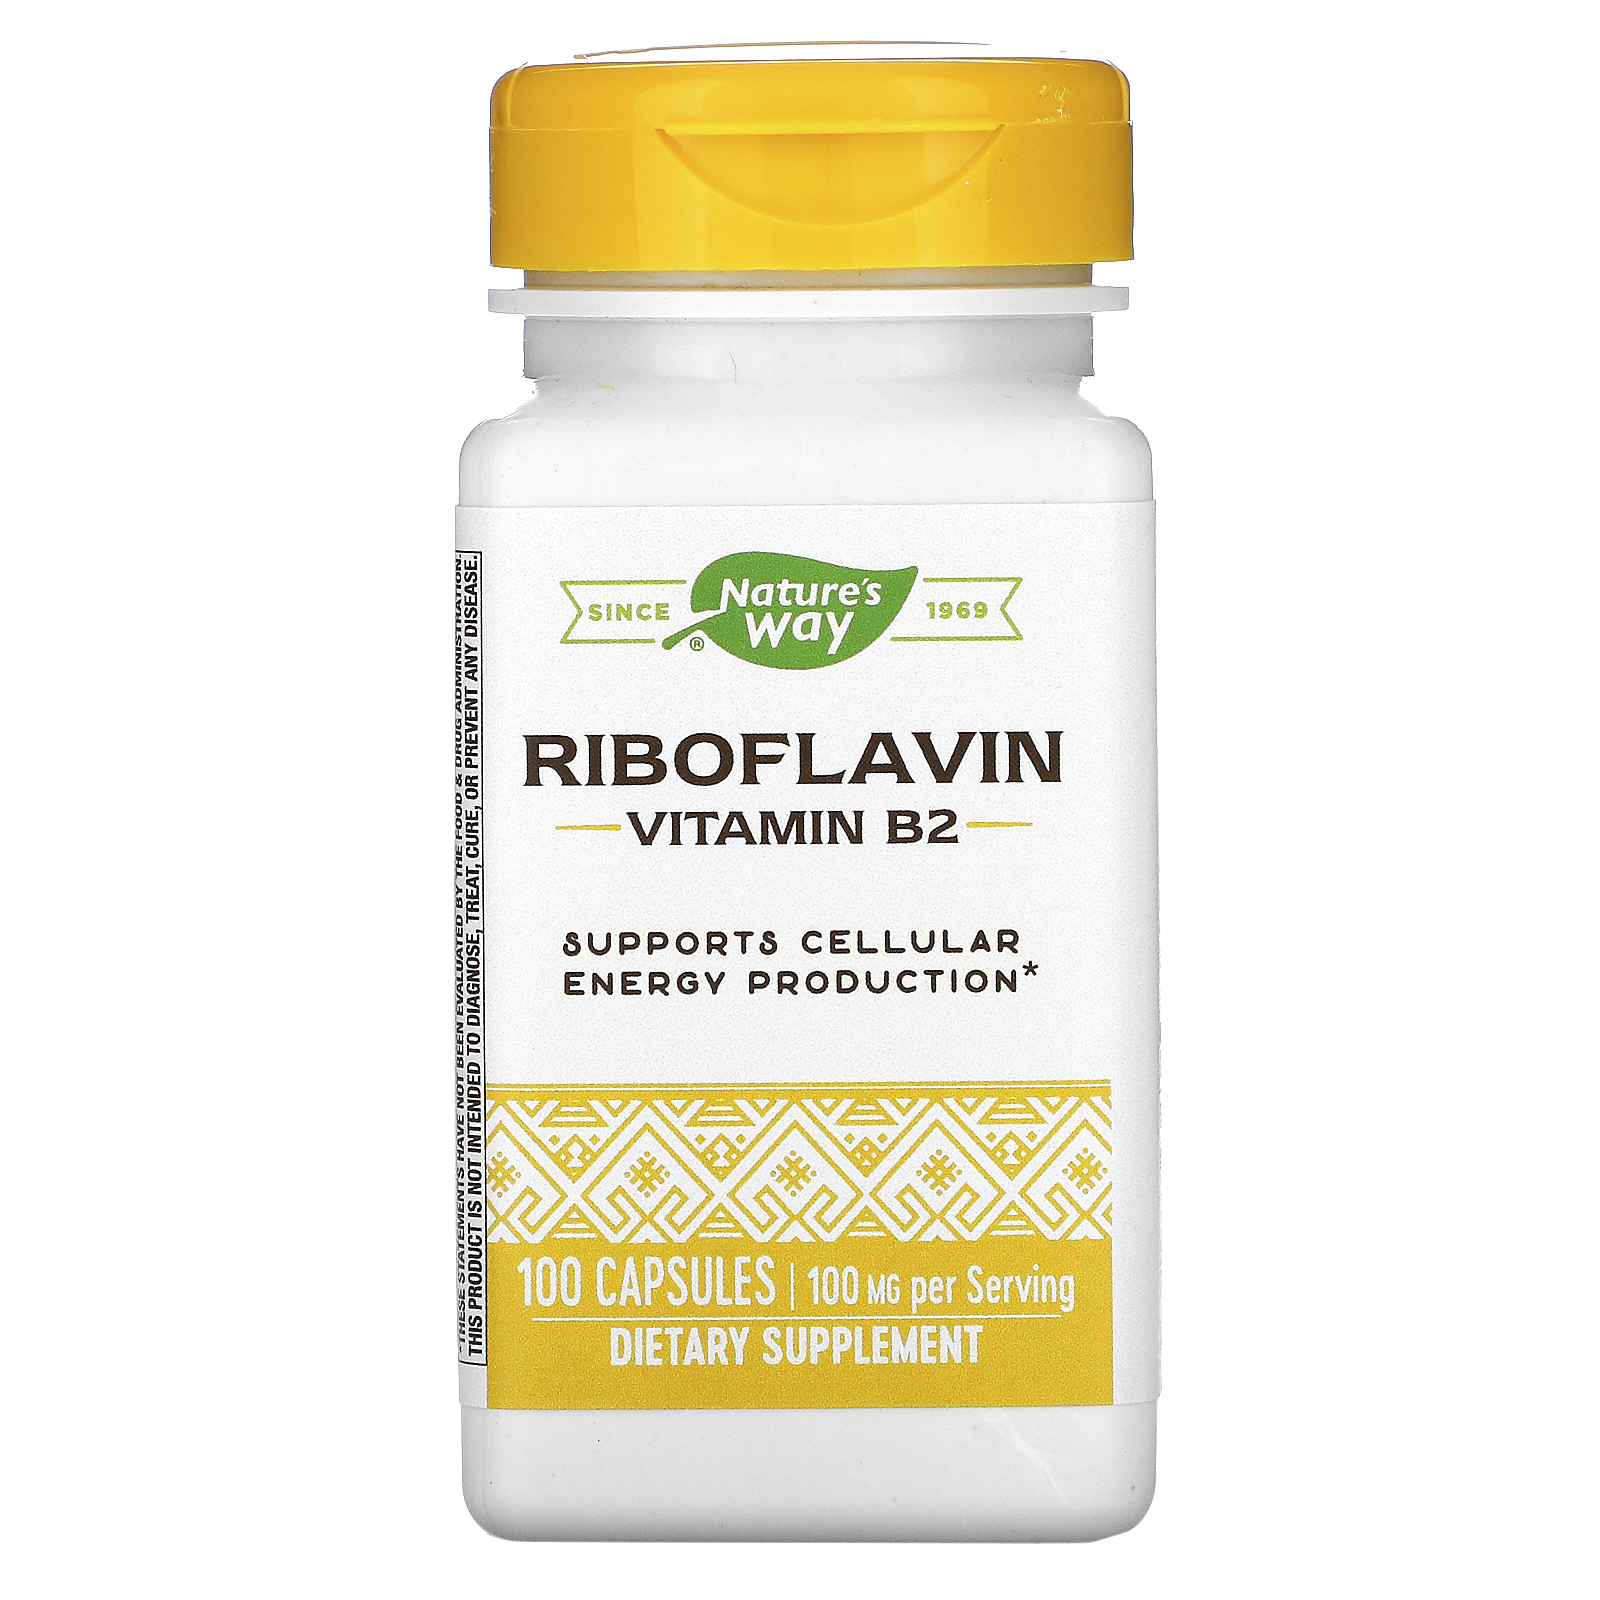 B2-vitamin (riboflavin): az antioxidáns